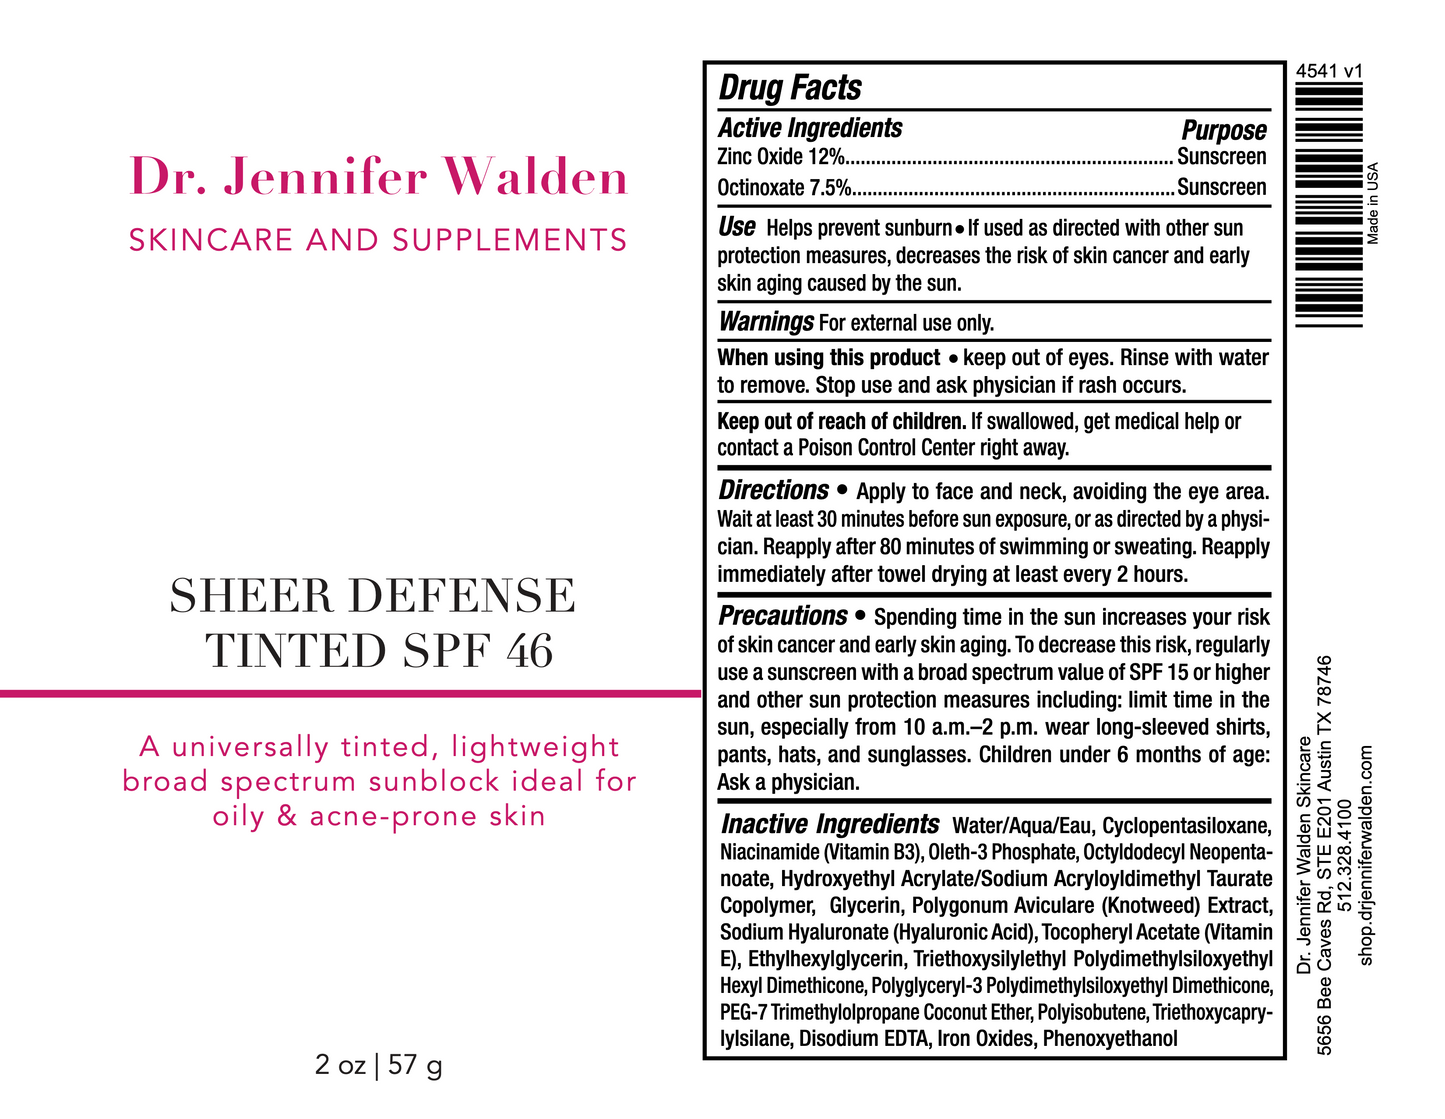 SHEER DEFENSE TINTED SPF 46-4